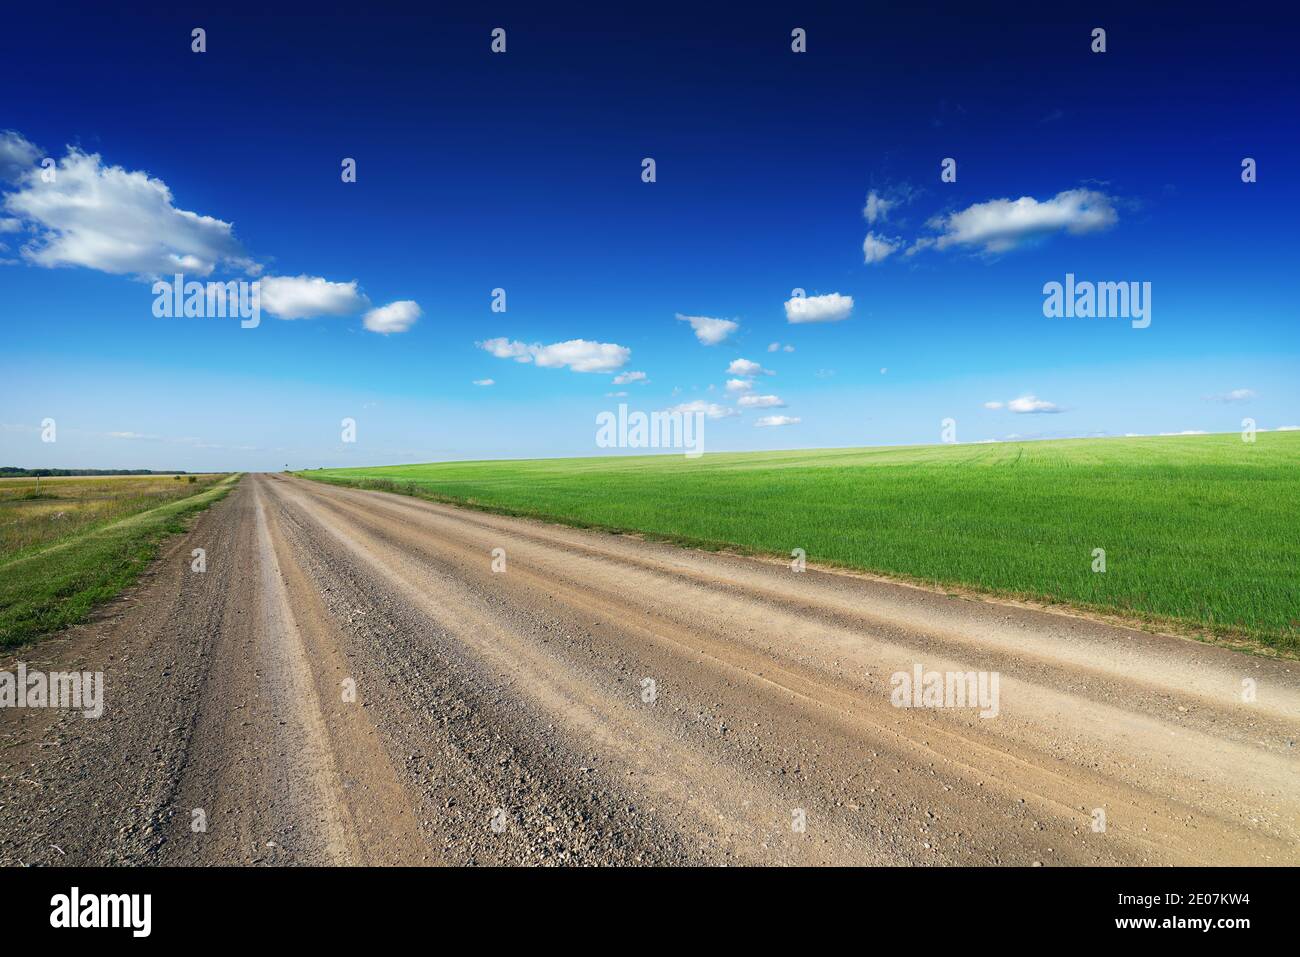 Una strada sterrata corre accanto a un campo di grano verde. Campagna. Cielo blu e alcune nuvole. Guida fuoristrada. Foto Stock